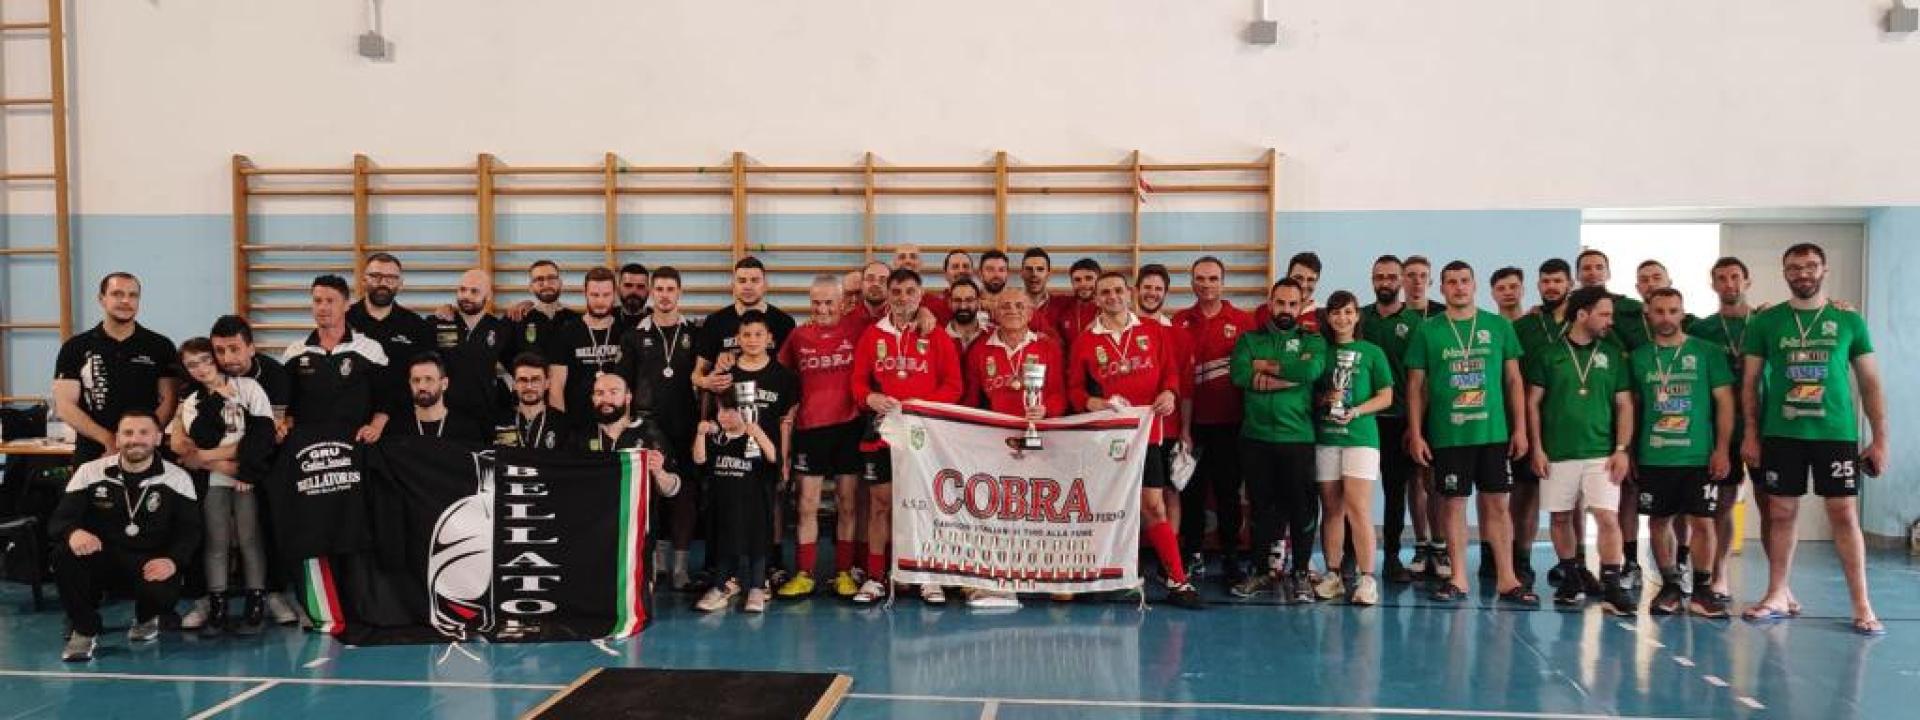 Marche - L'Asd Cobra di Fermo si diploma Campione d'Italia nel tiro alla fune indoor